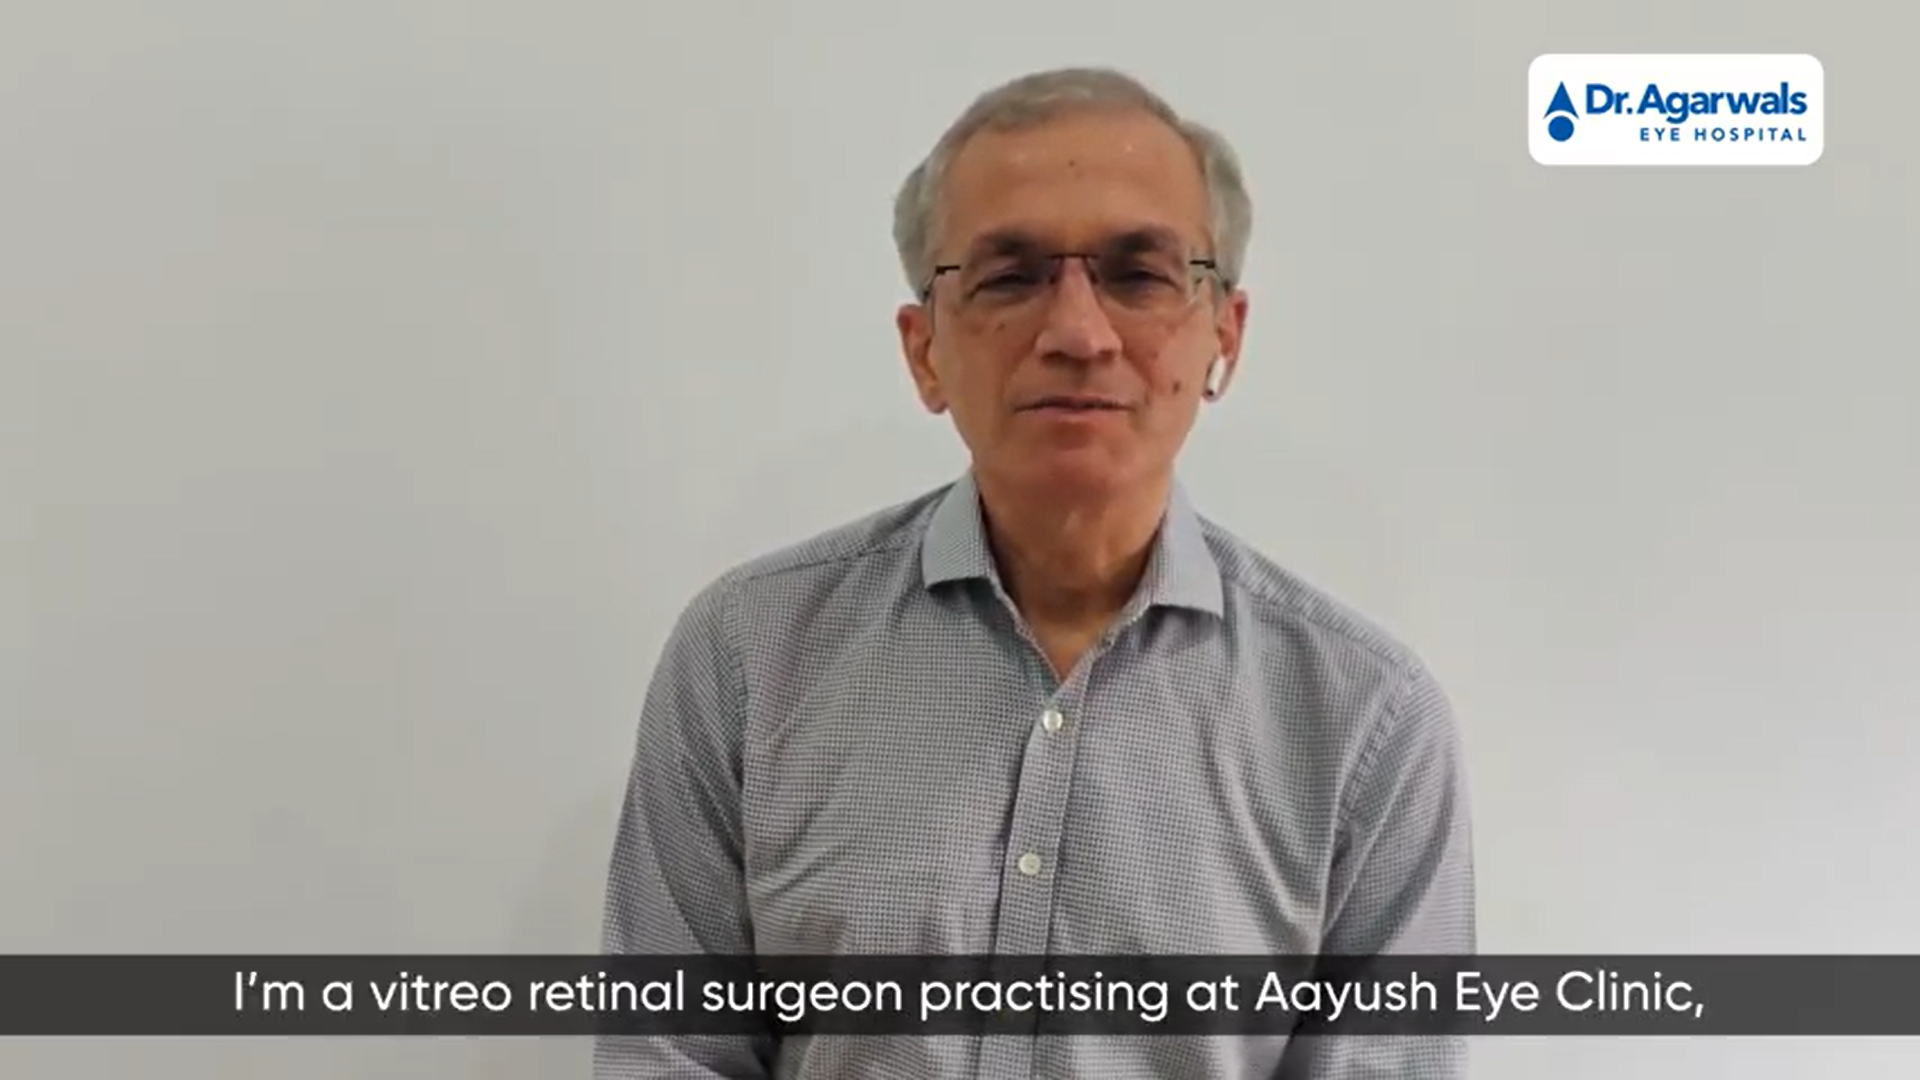 ડૉક્ટર બોલે છે: કોવિડ દર્દીઓમાં સેન્ટ્રલ રેટિના નસની અવરોધ | કોવિડ અને આંખની સંભાળ